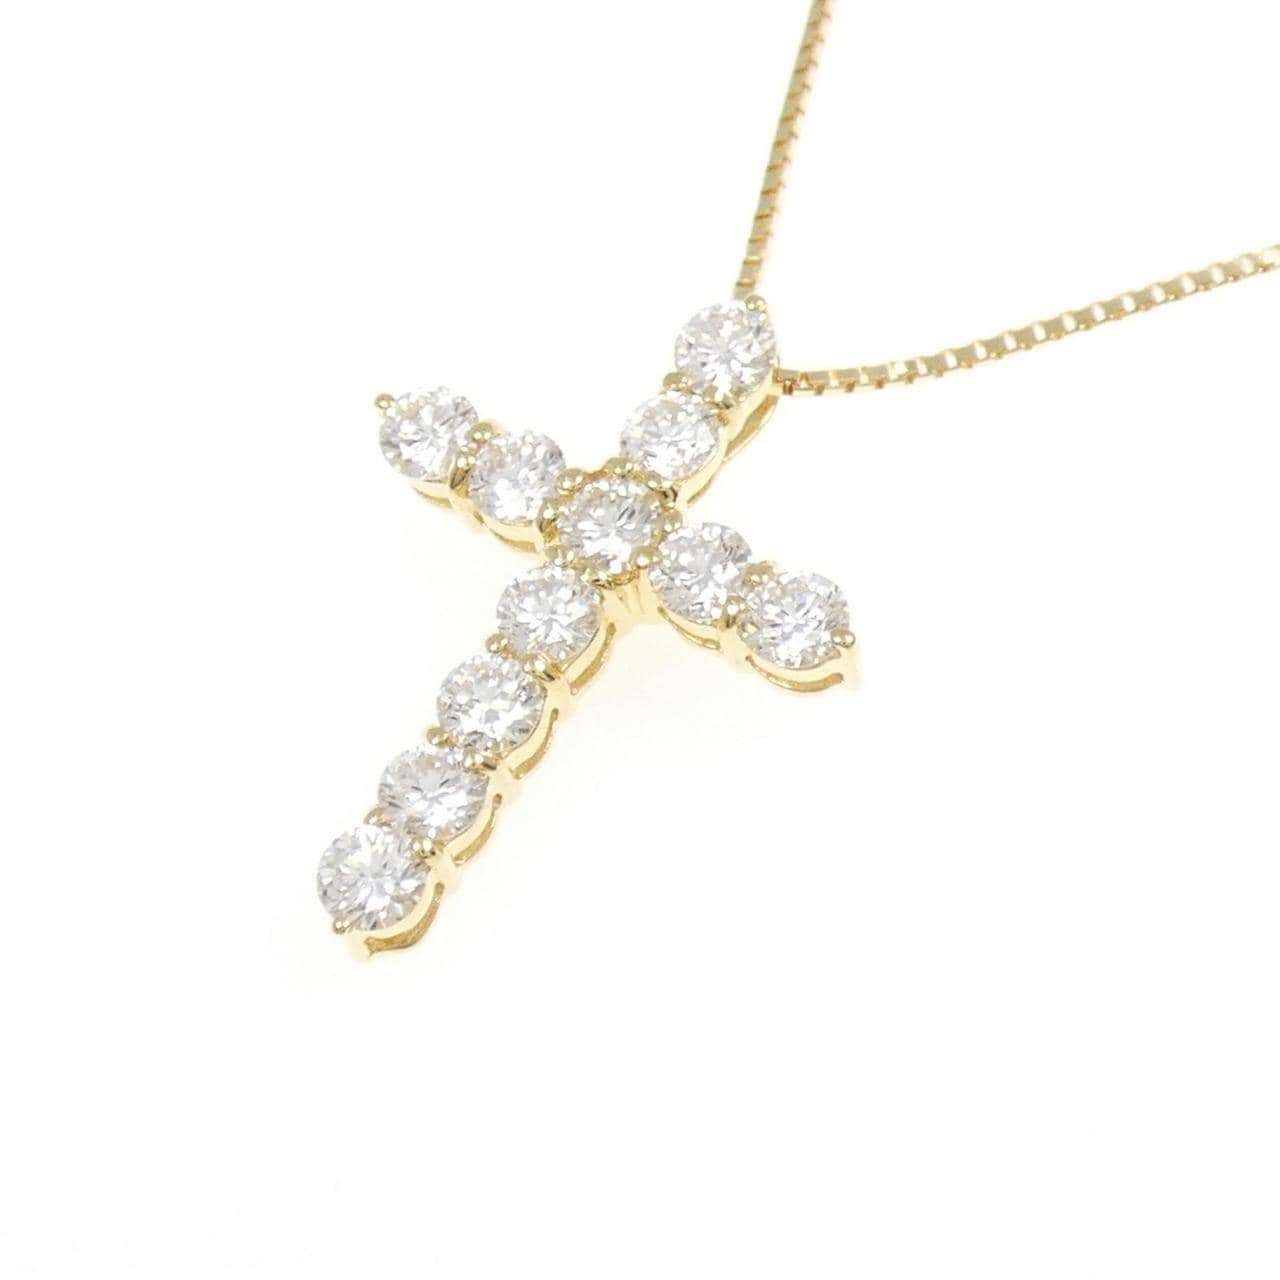 【新品】 K18YG鑽石項鍊 1.004克拉 D VS1-SI1 EXT-GOOD